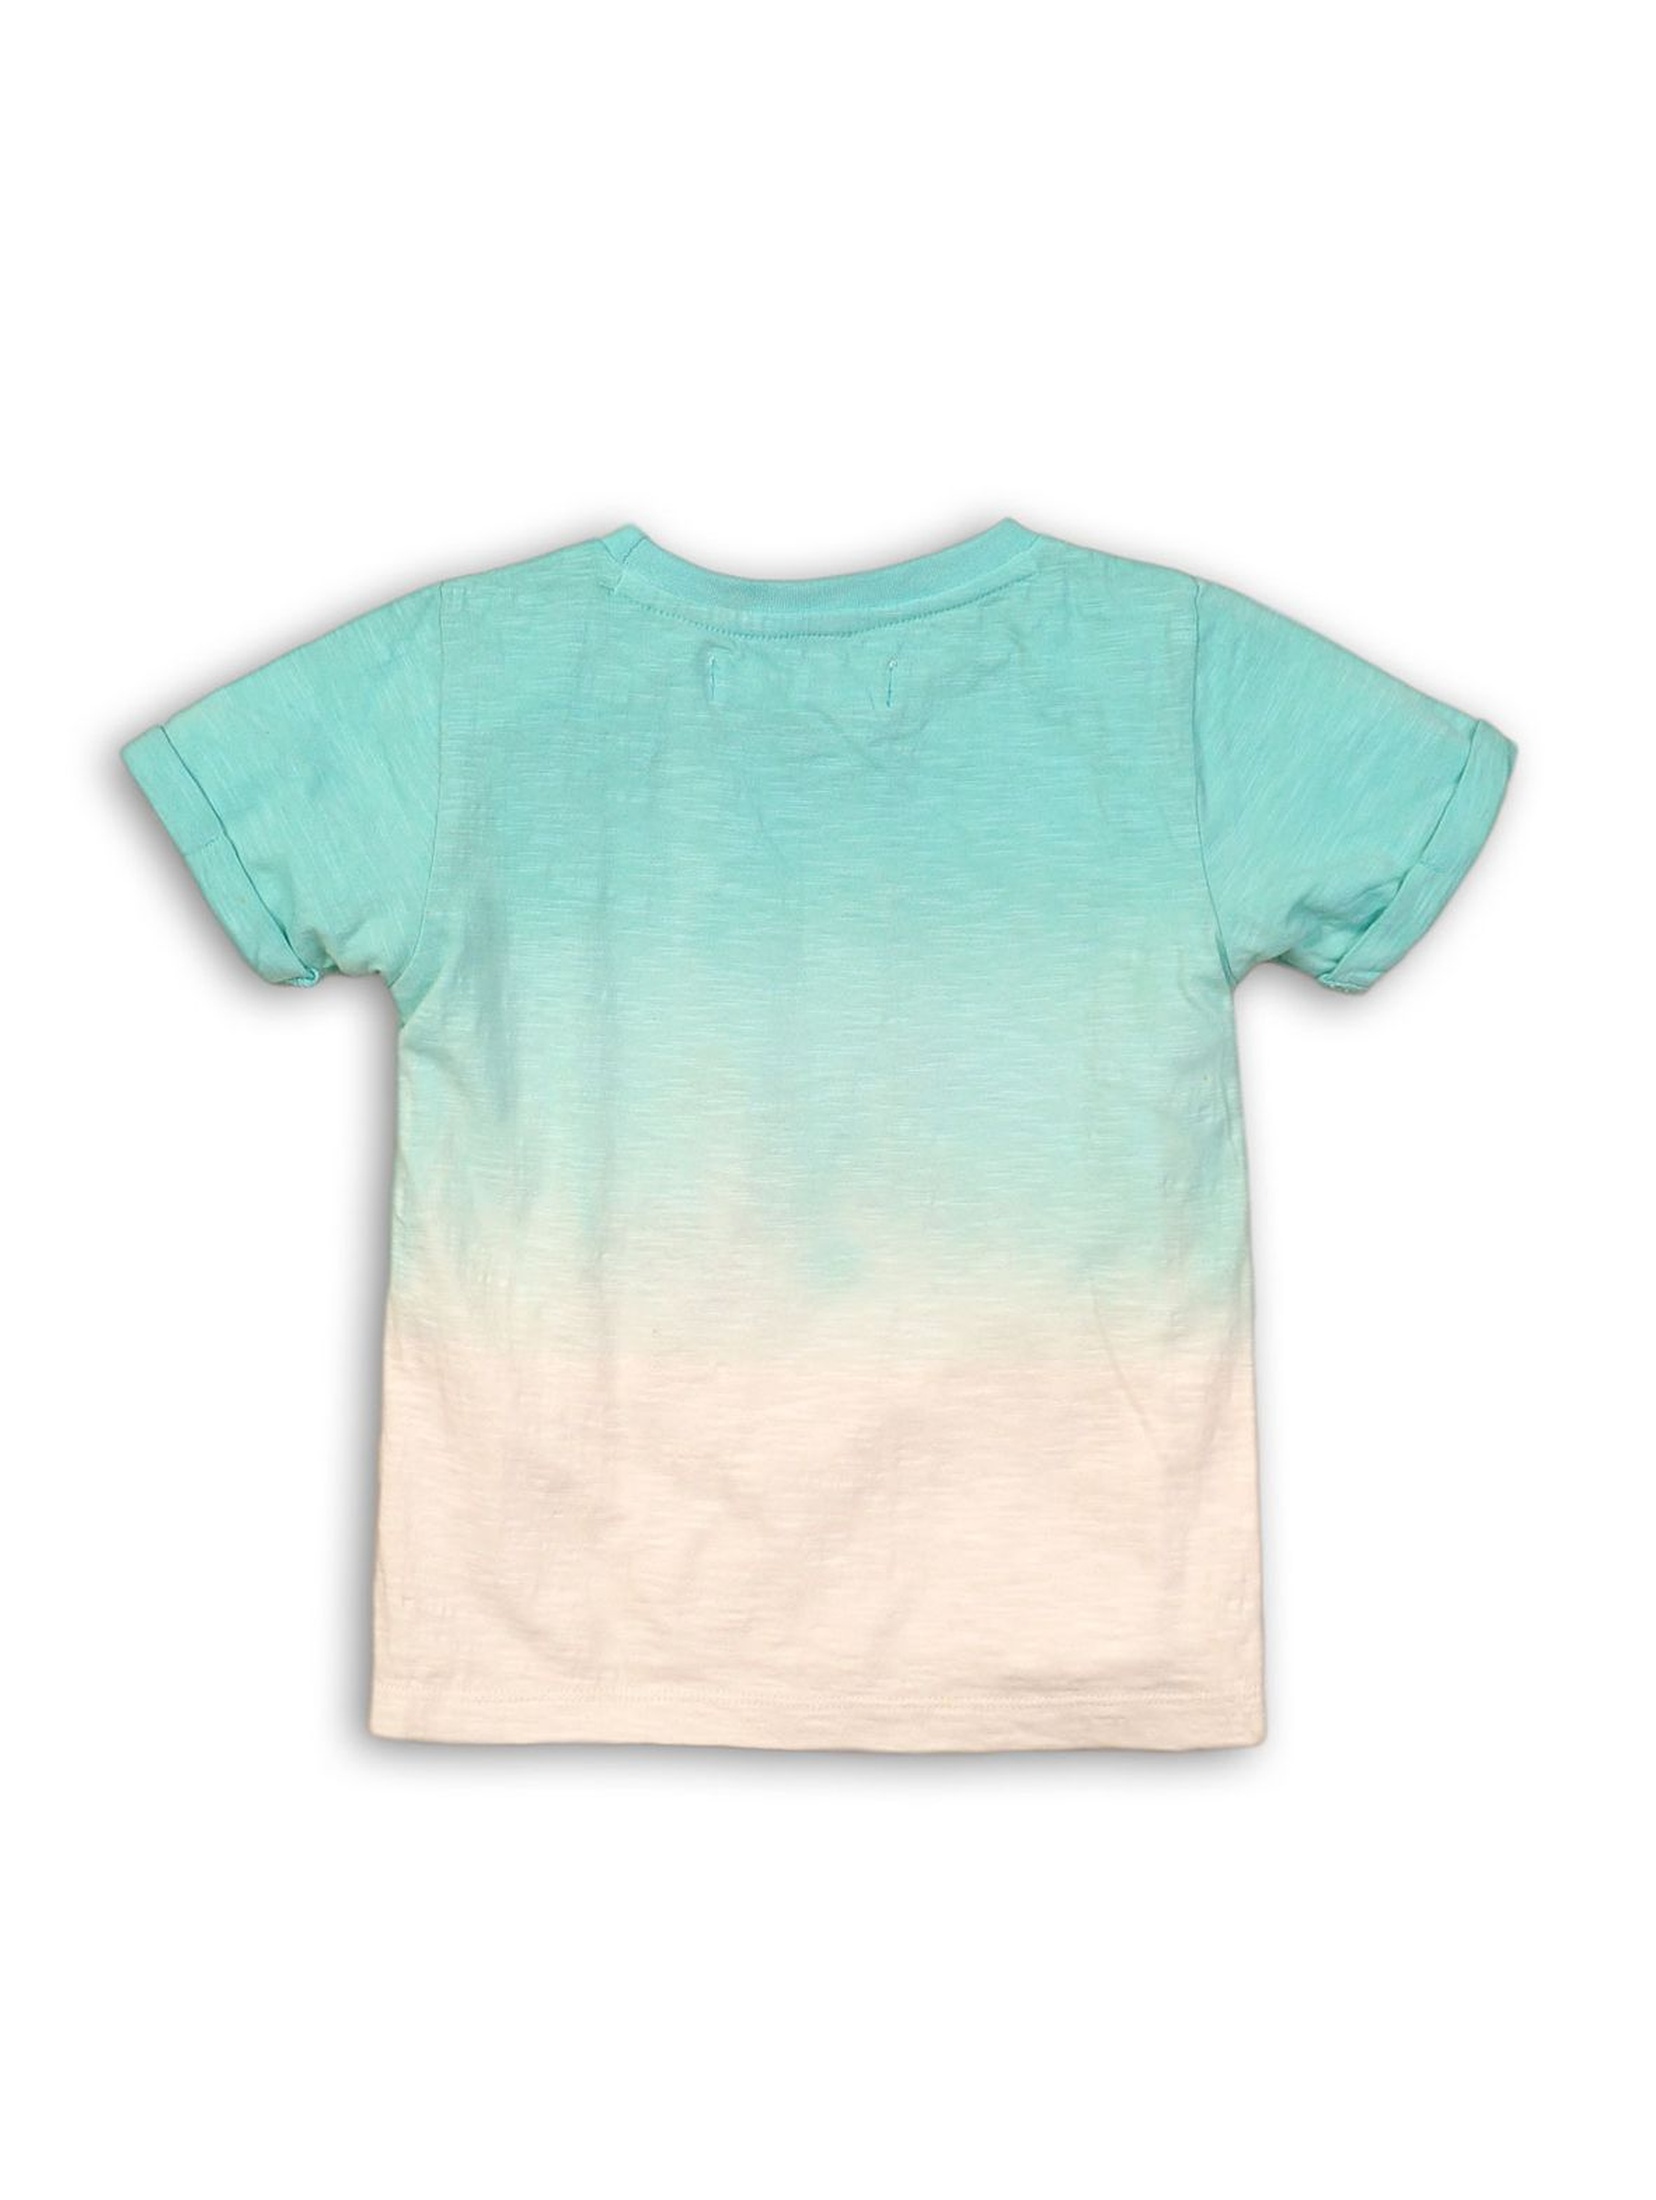 Niebiesko-biały t-shirt dla niemowlaka